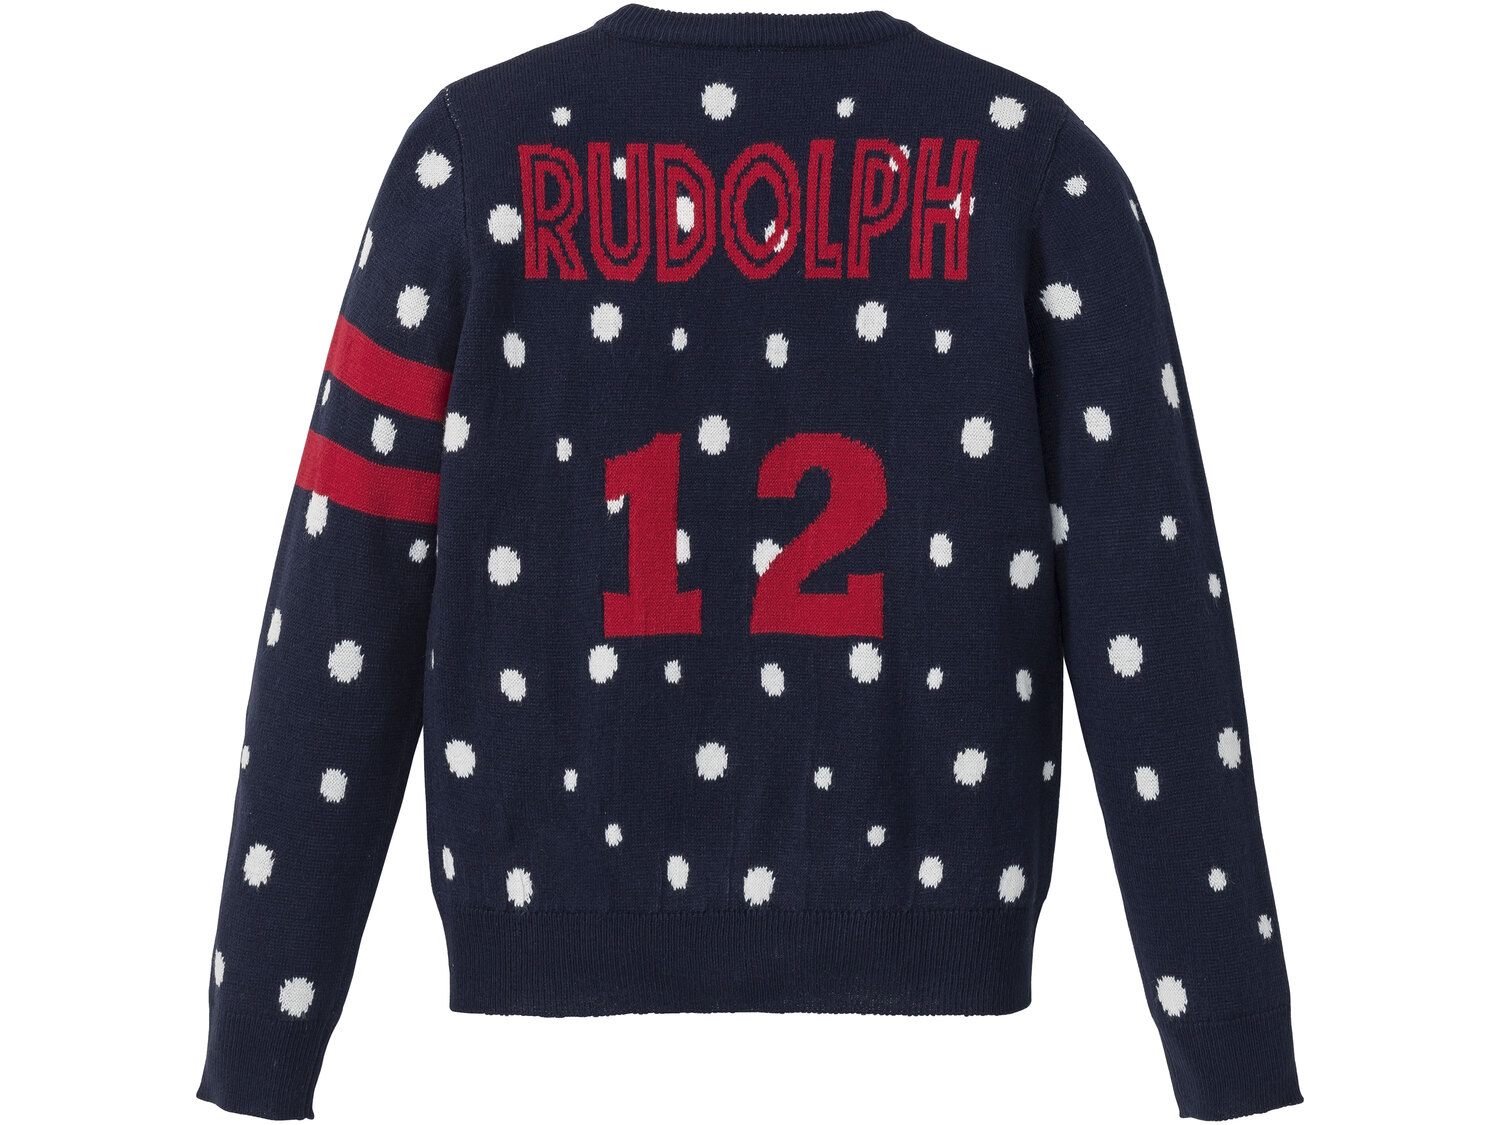 Sweter młodzieżowy z motywem świątecznym Pepperts, cena 27,99 PLN 
- rozmiary: ...